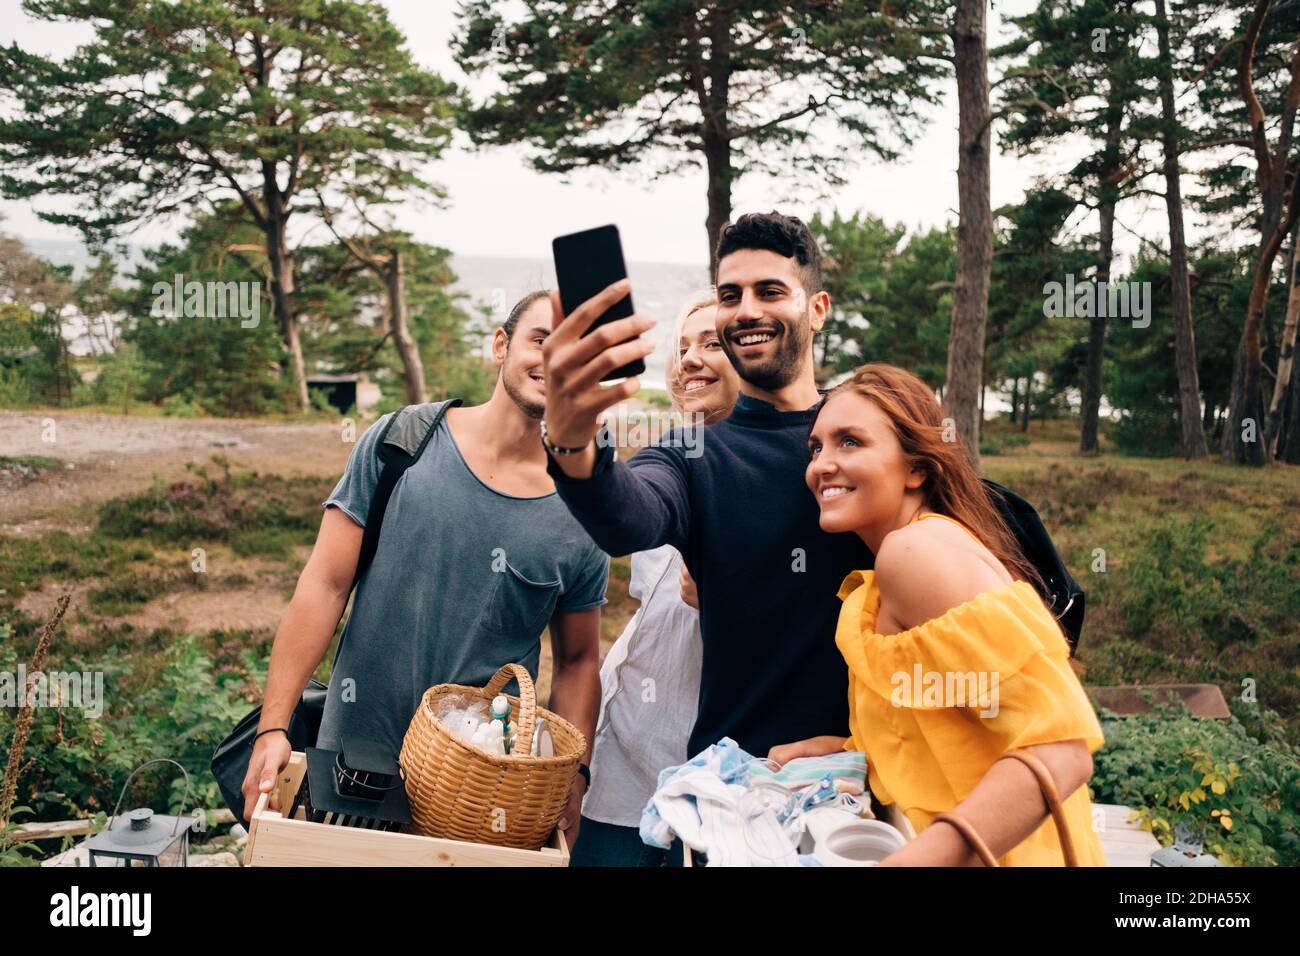 Des amis heureux, hommes et femmes, emportant le selfie sur un smartphone en forêt Banque D'Images